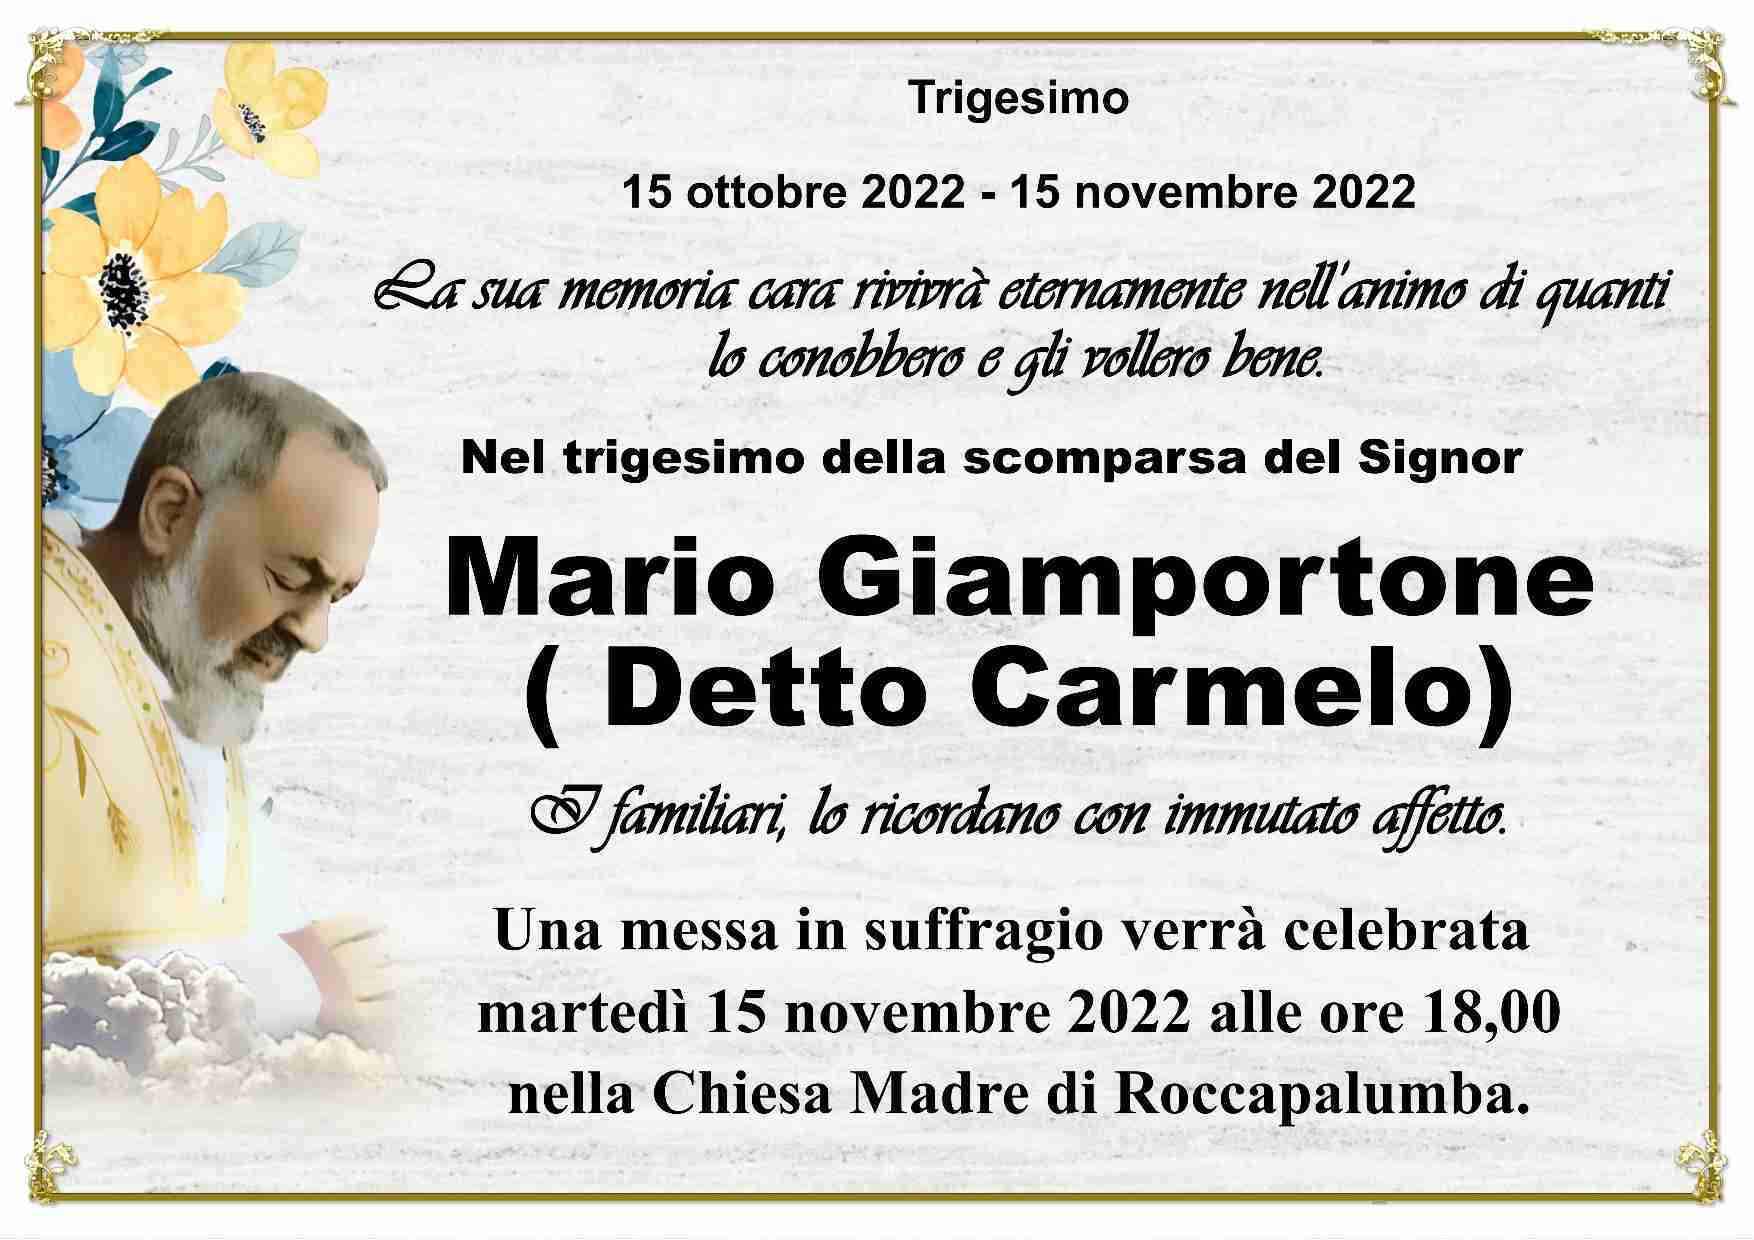 Mario Giamportone